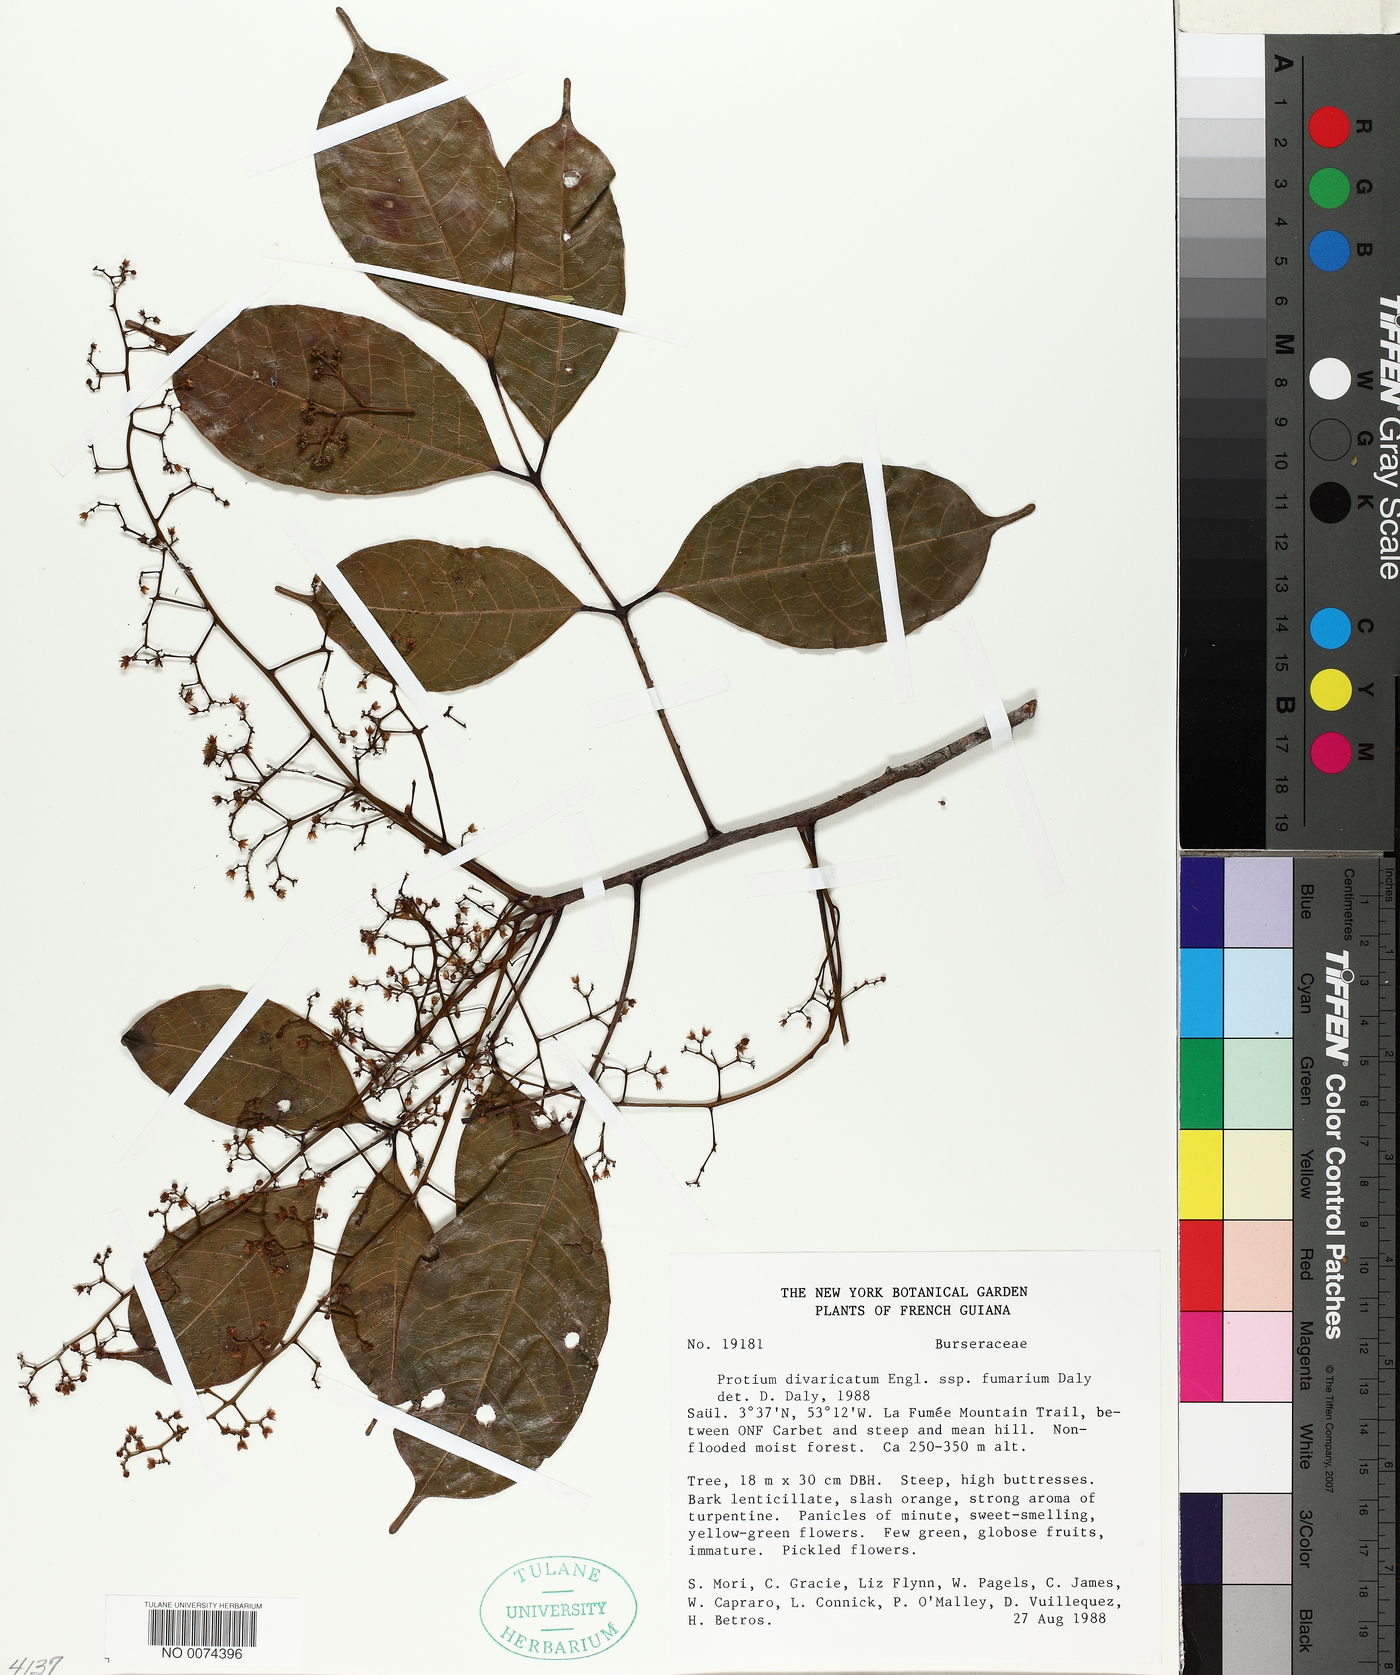 Protium divaricatum subsp. fumarium image